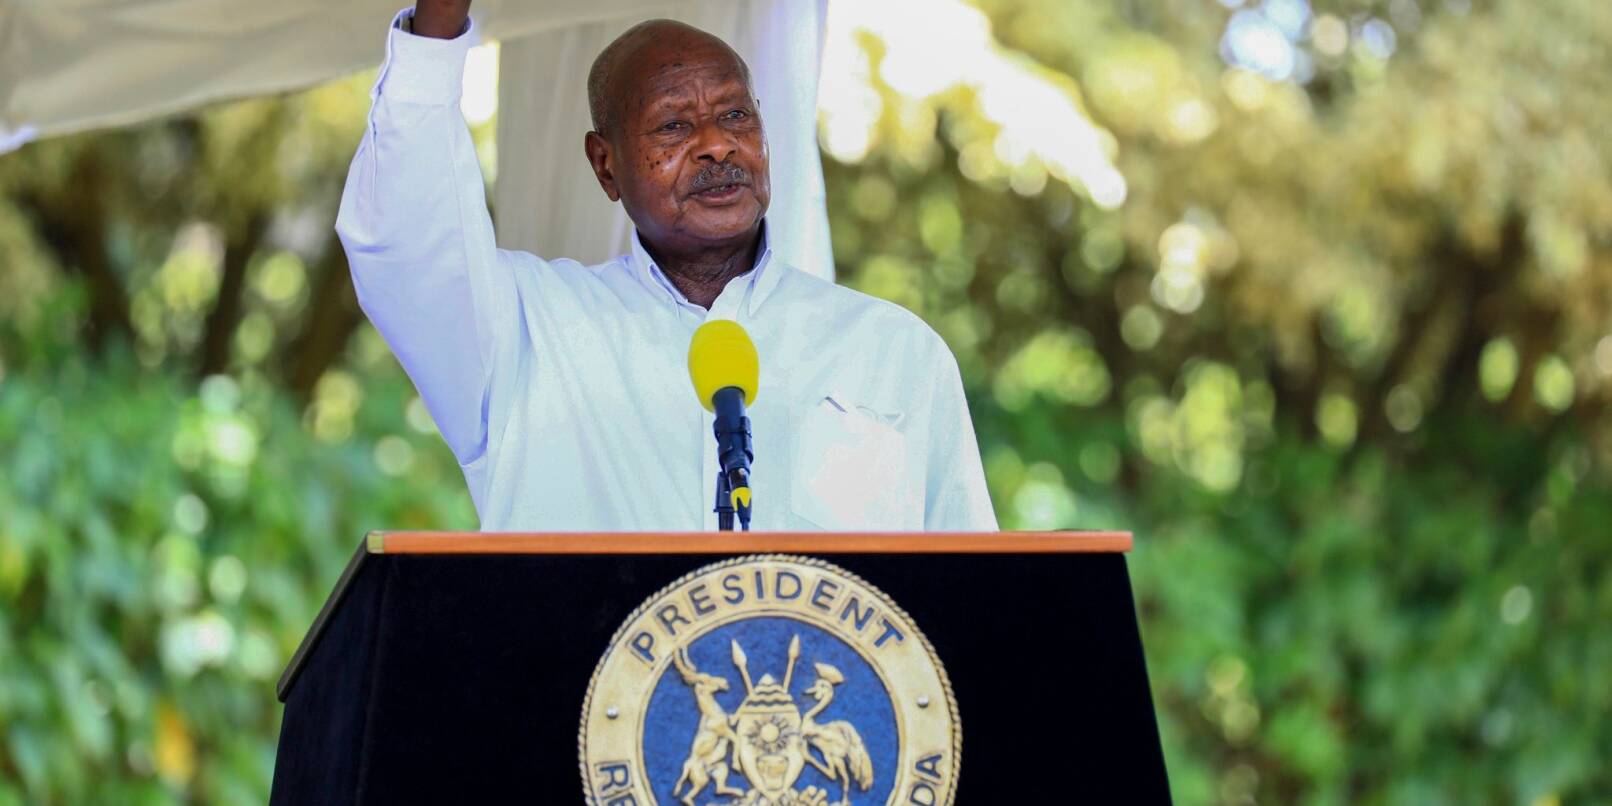 Unterzeichnet der ugandische Präsident Yoweri Museveni das «Anti-LGBT-Gesetz», wonach bei homosexuellen Handlungen die Todesstrafe drohen könnte?